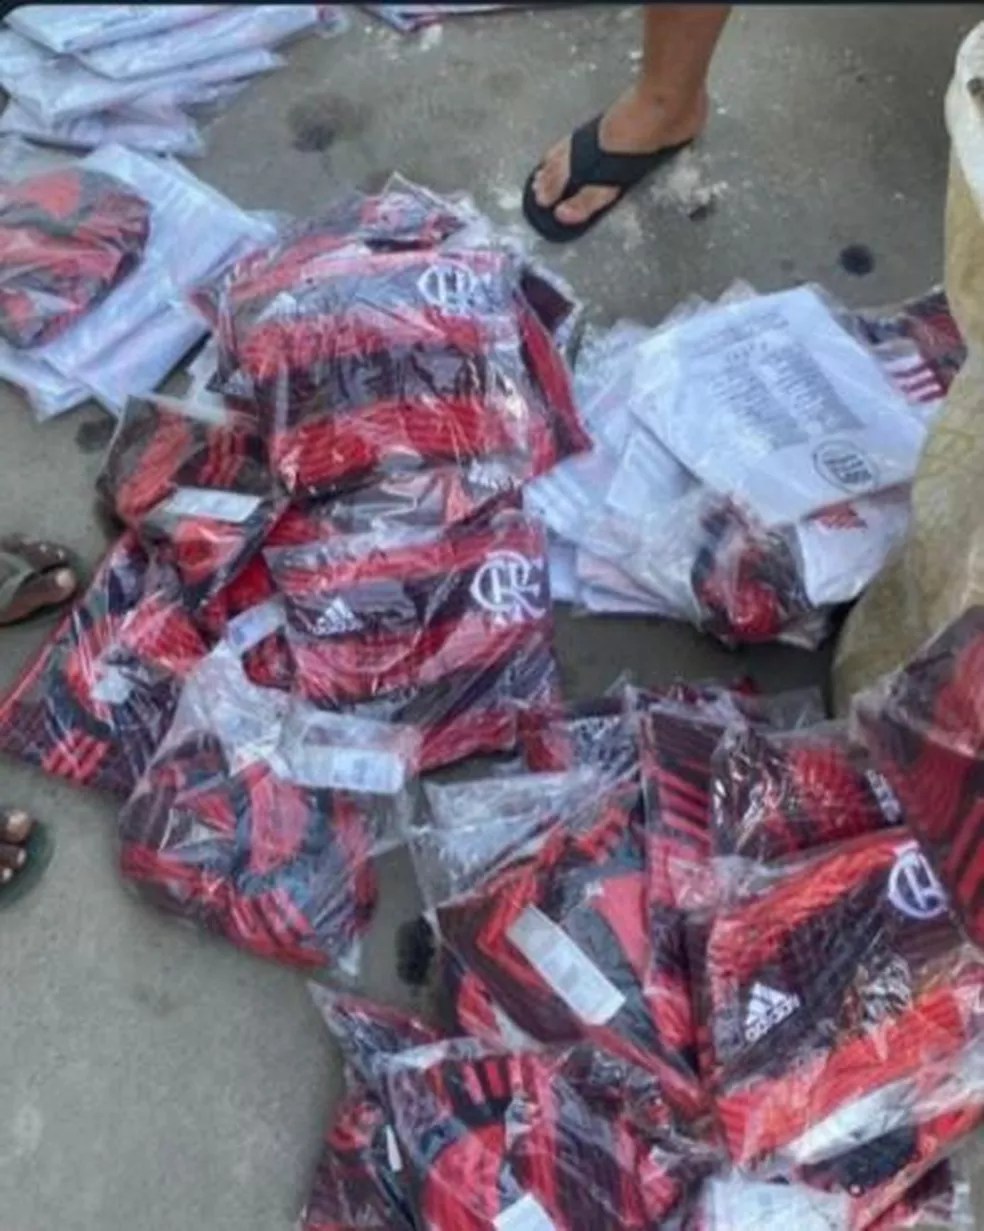 Fotos que seriam das camisas do Flamengo roubadas em redes sociais